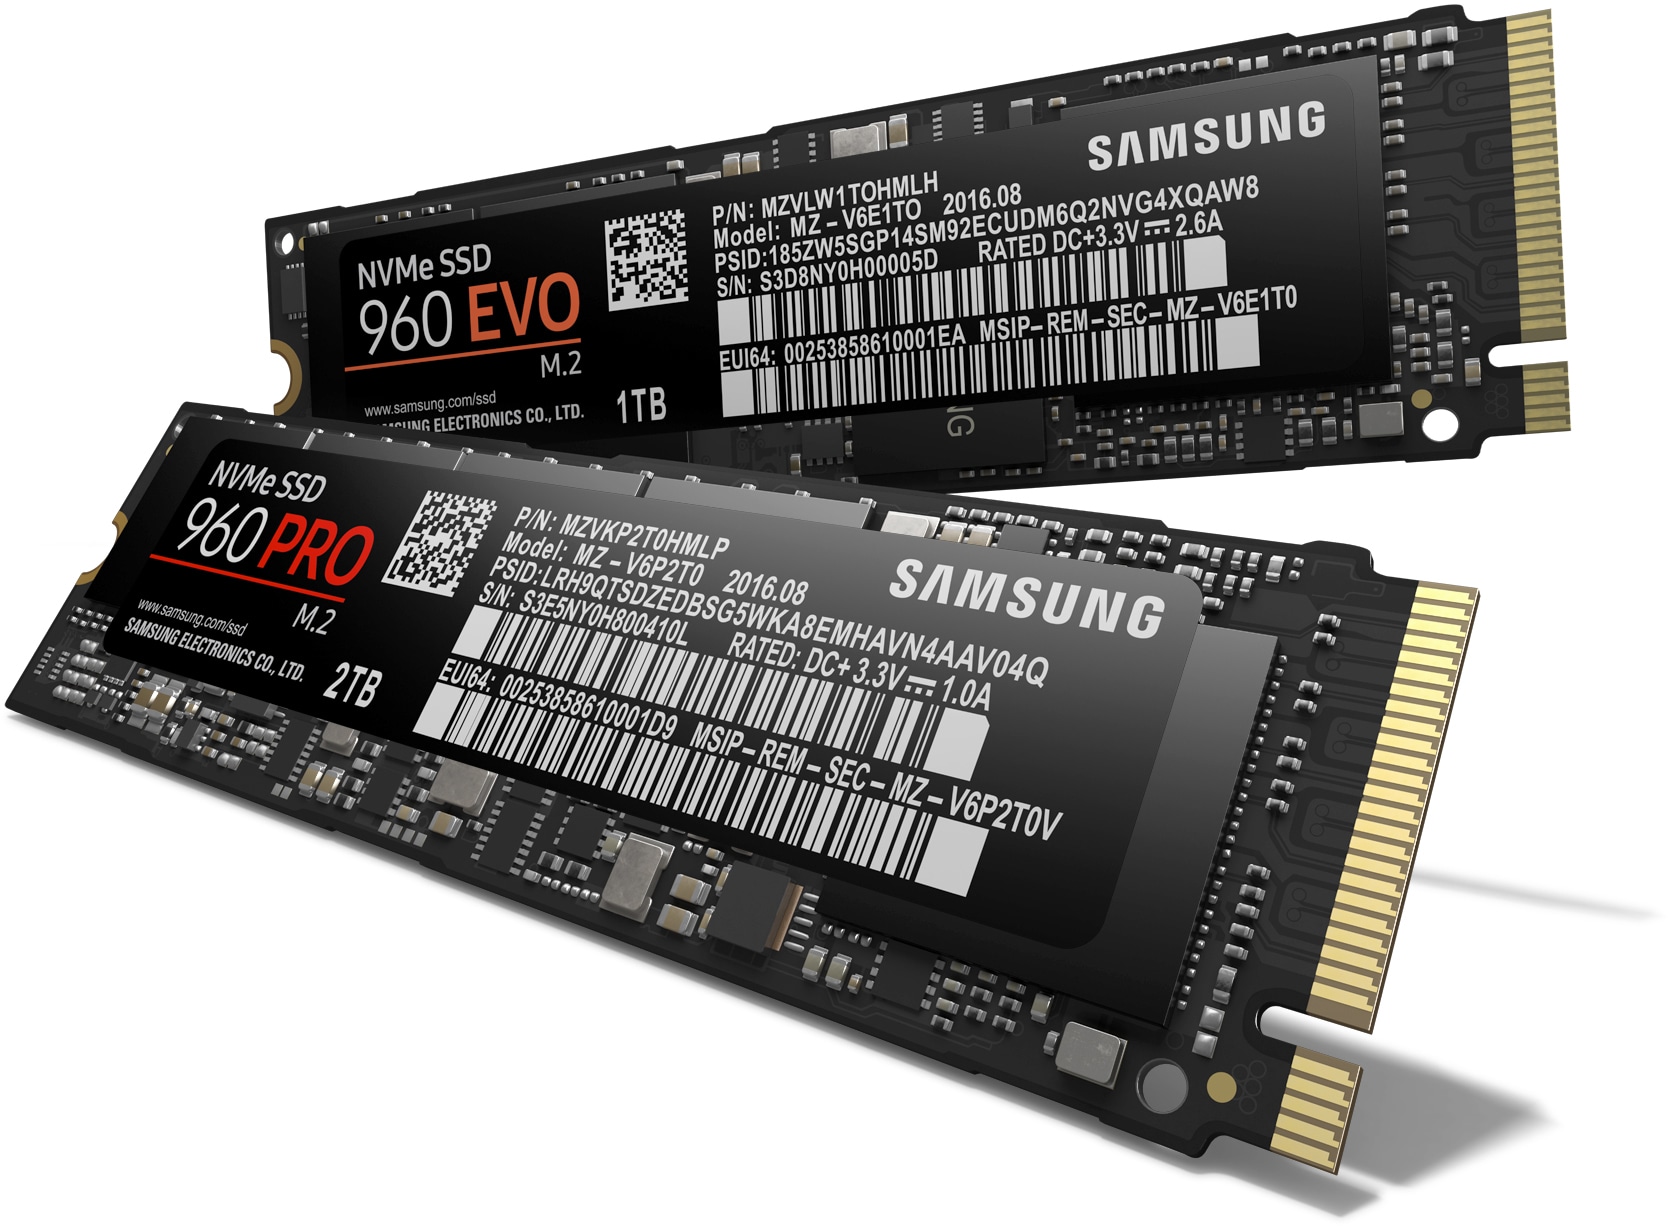 Novos SSDs da Samsung